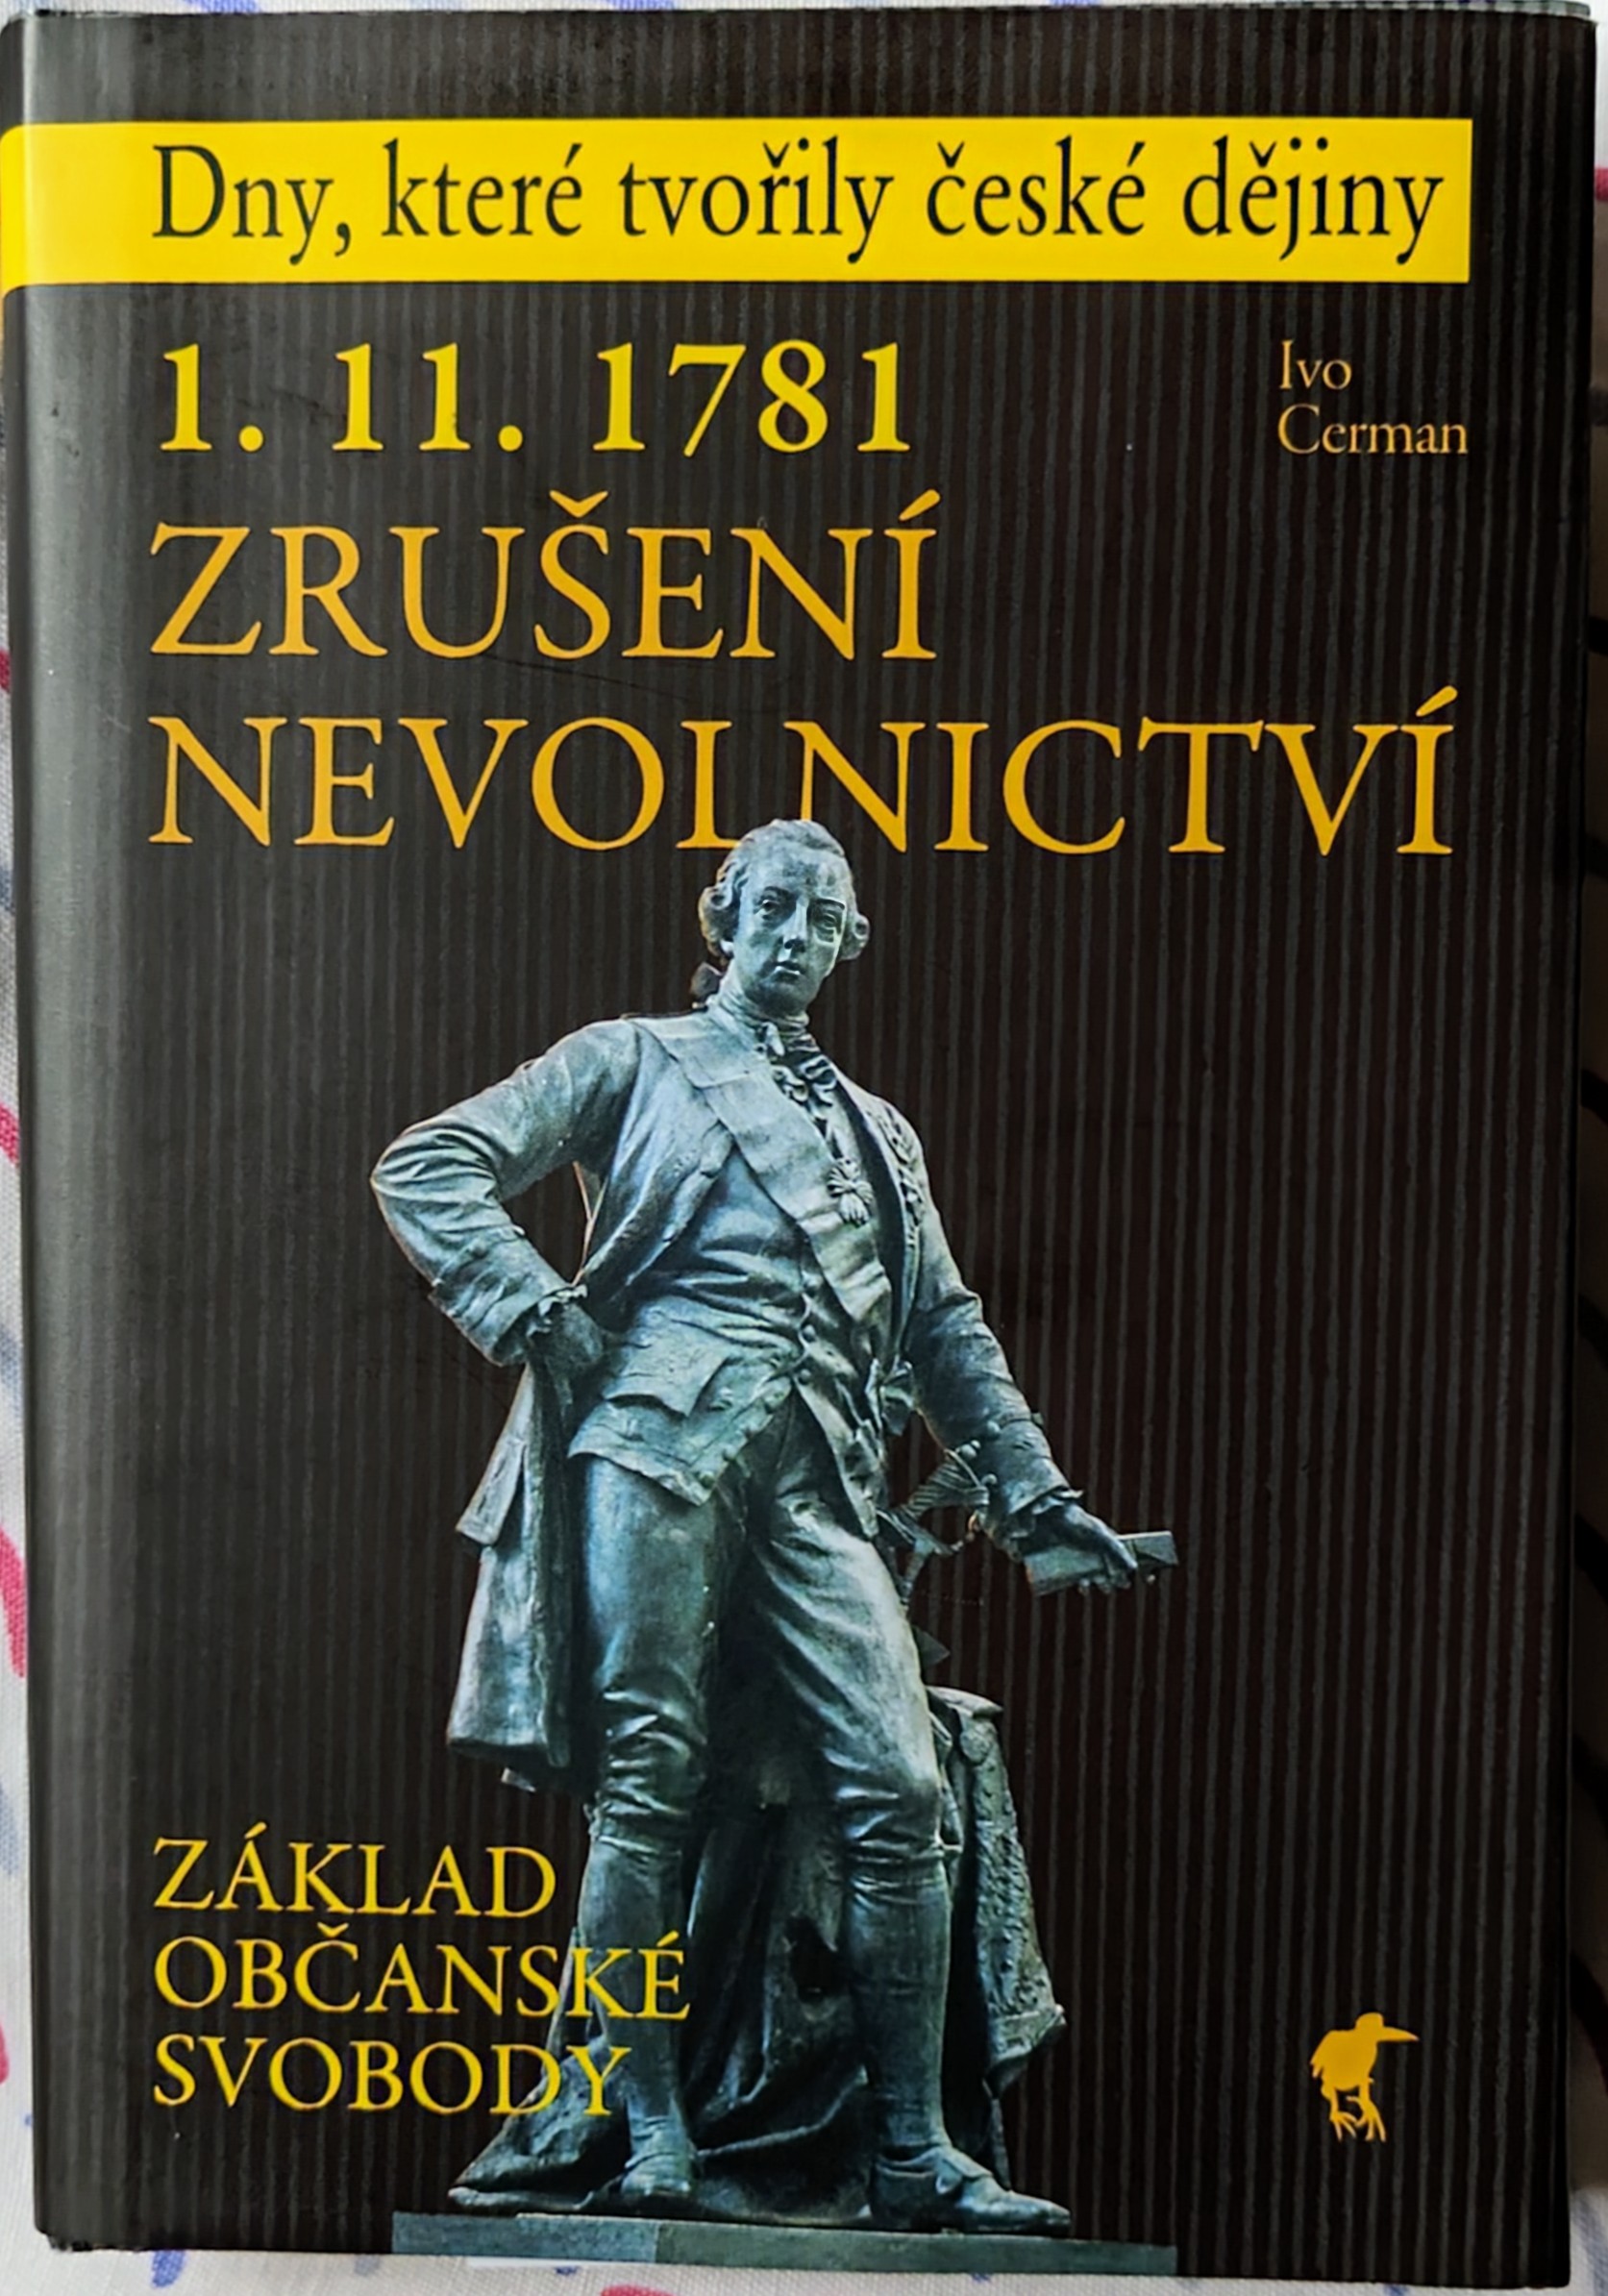 Ivo Cerman: 1. 11. 1781 Zrušení nevolnictví (Hardcover, czech language, Havran, s.r.o.)